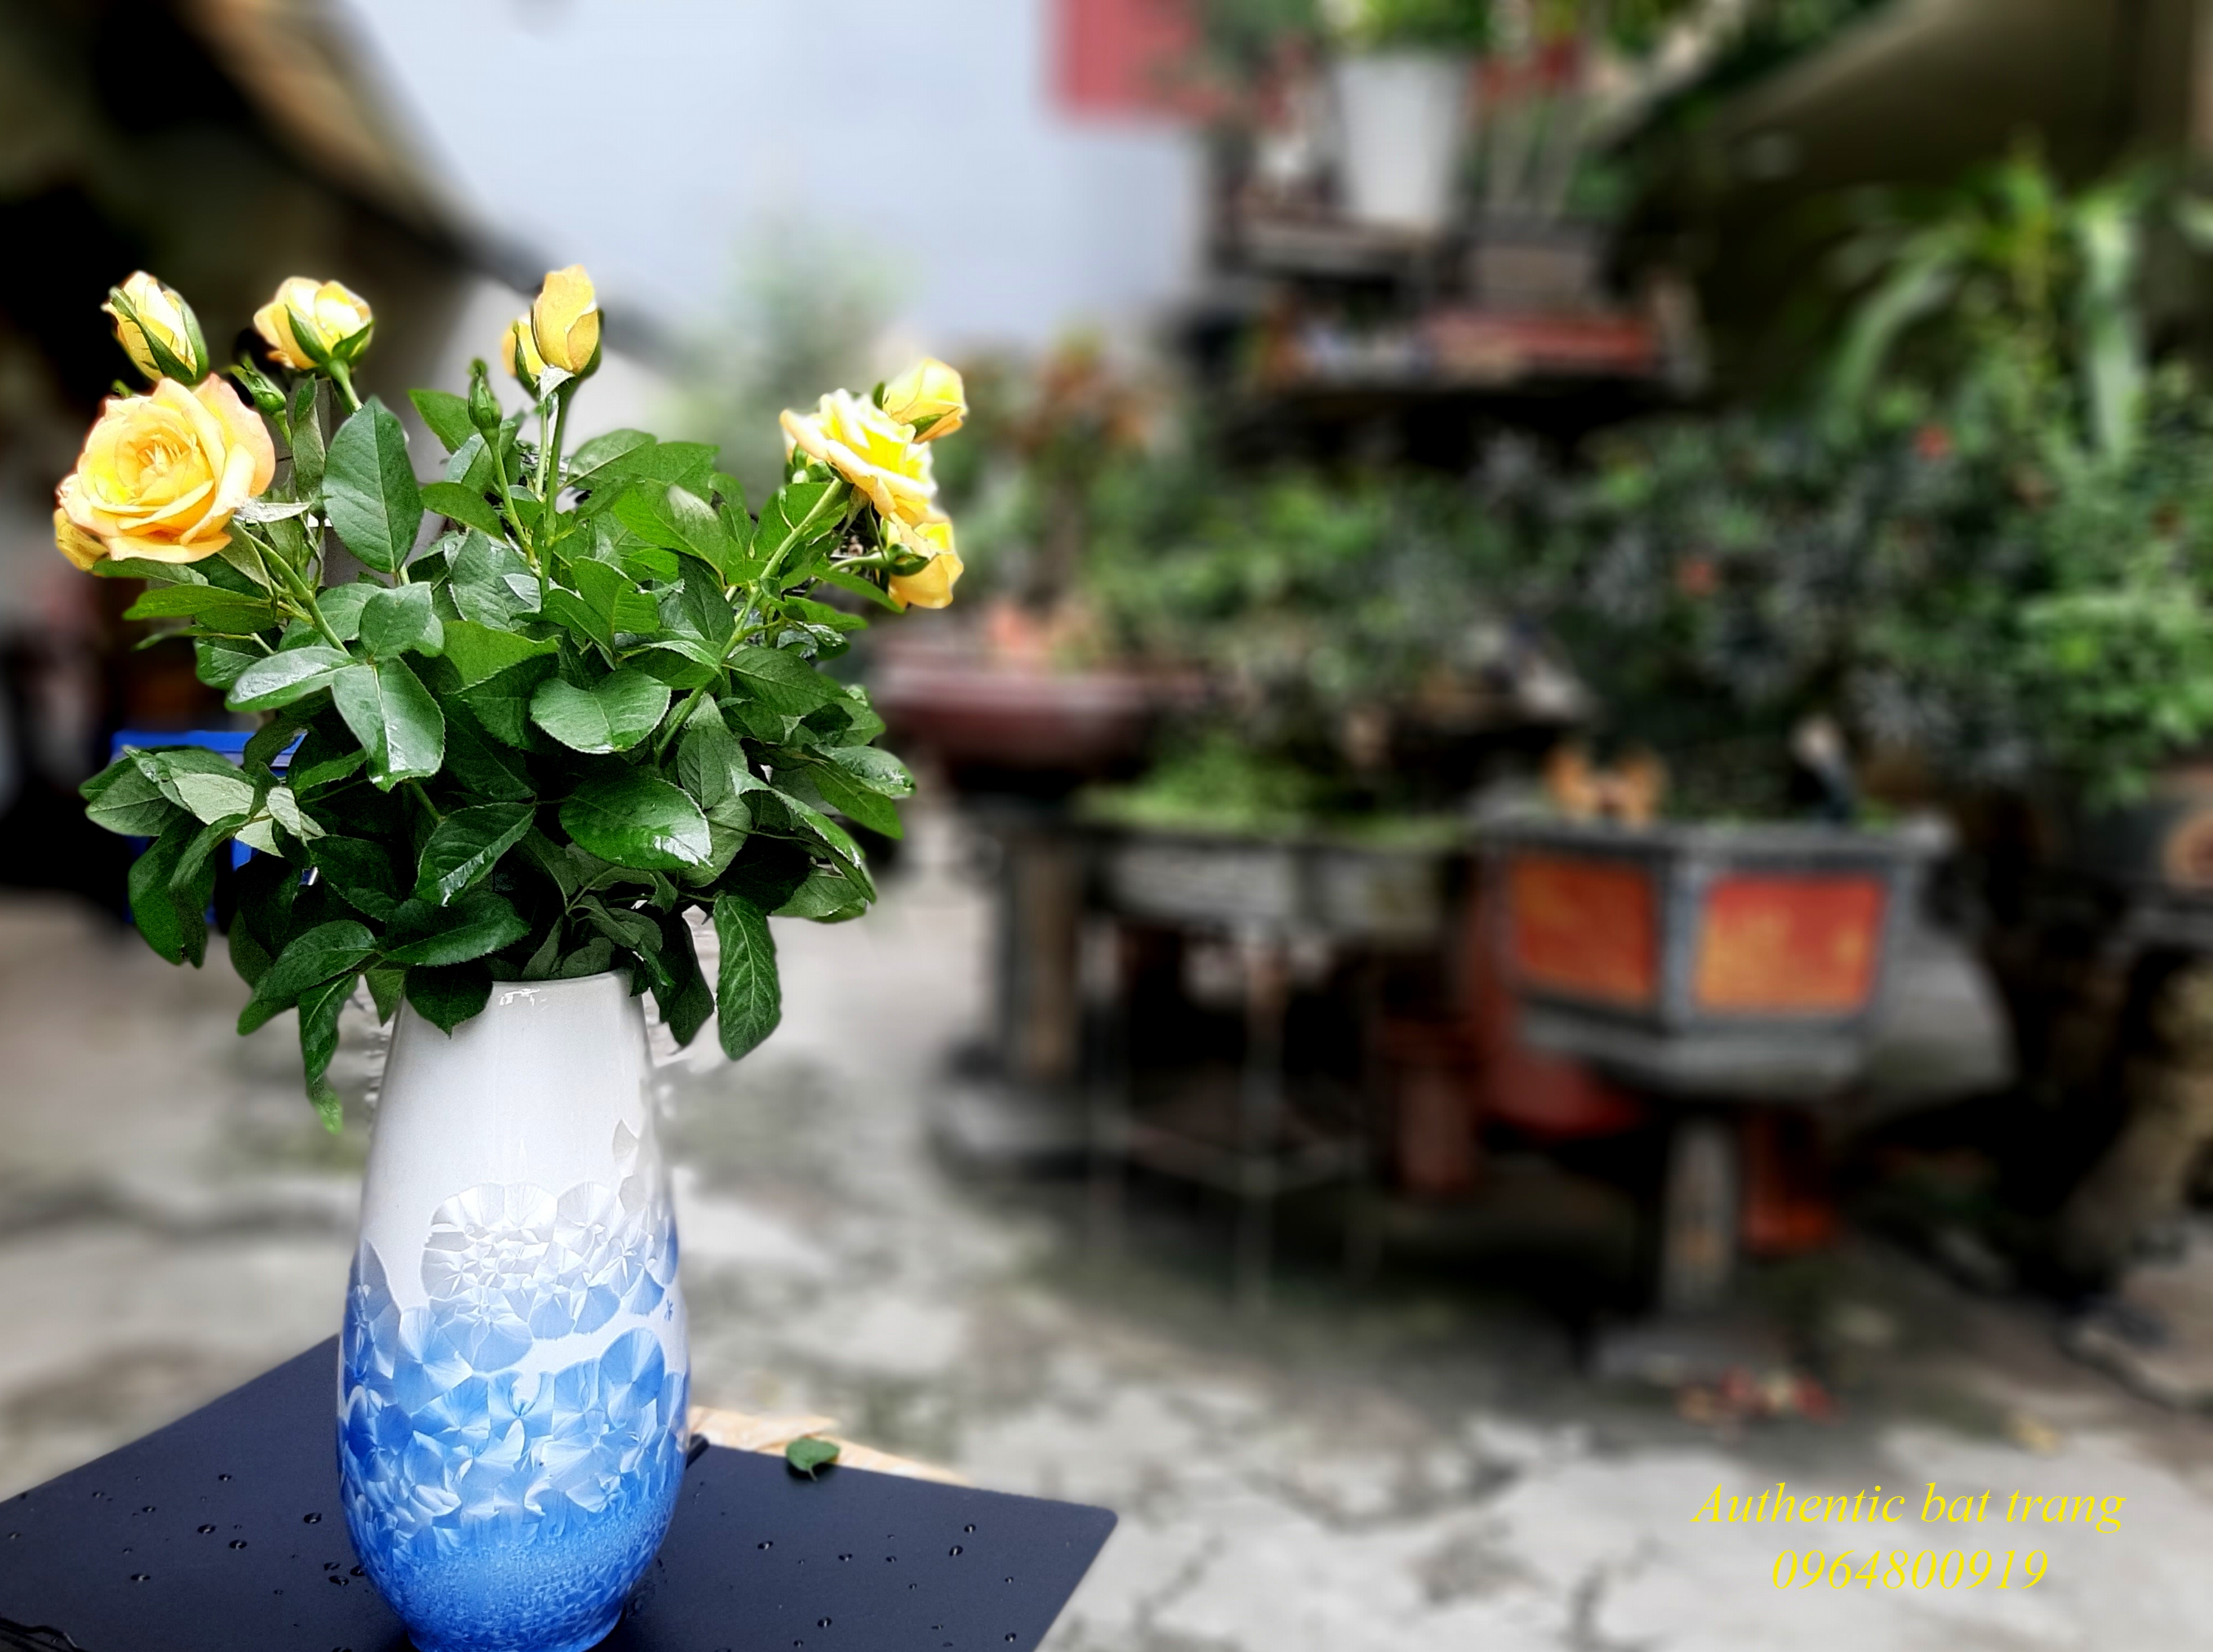 SIÊU ĐẸP VÀ RẺ- Bình cắm hoa size lớn ,men kết tinh xanh sản xuất tại xưởng gốm sứ Authentic bát tràng